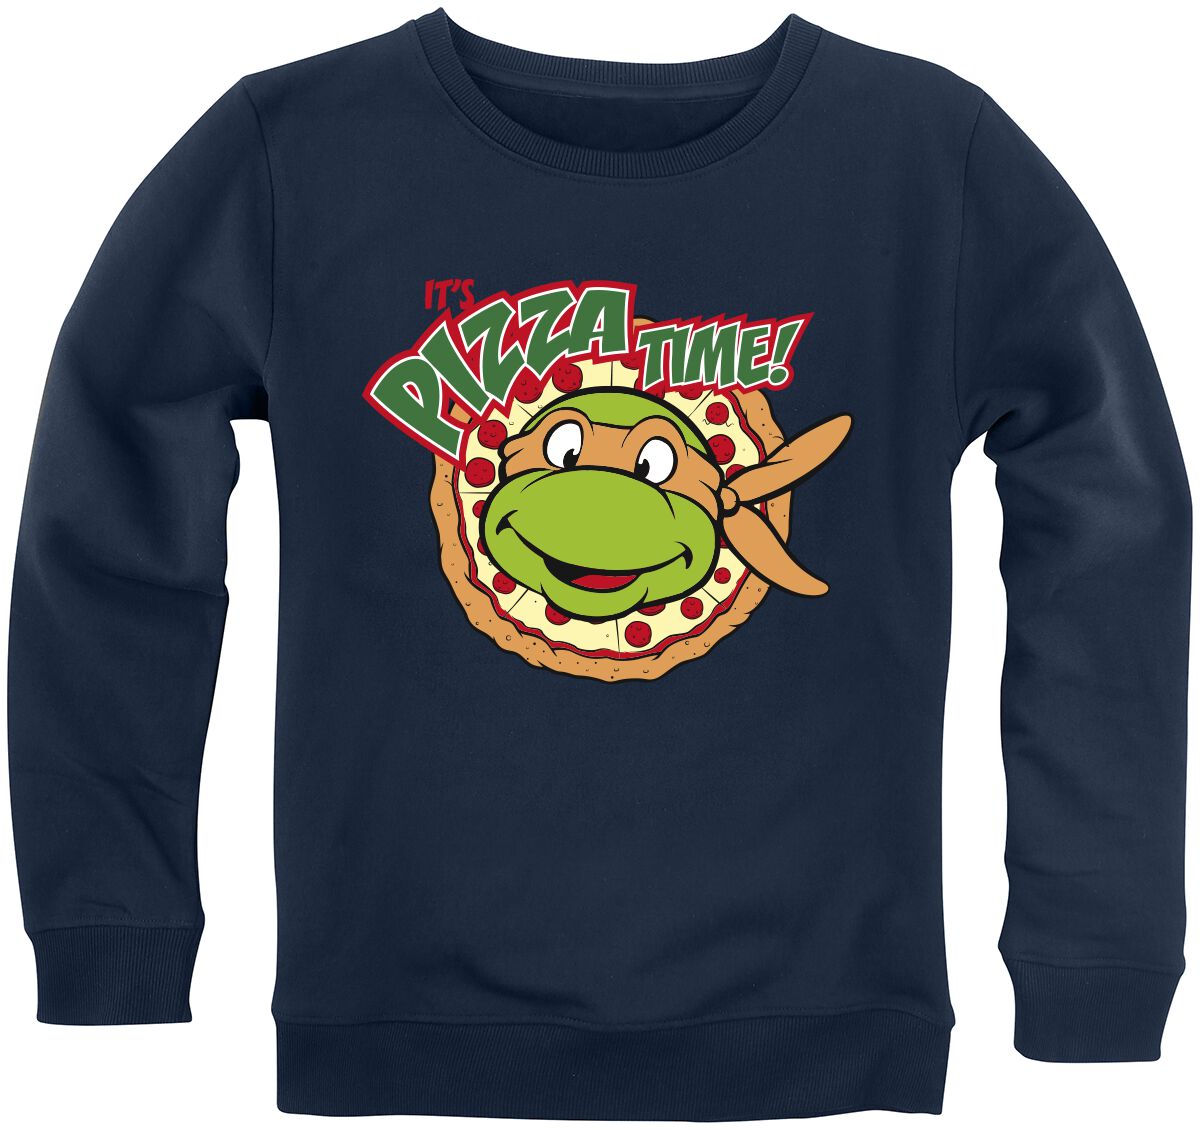 Teenage Mutant Ninja Turtles Sweatshirt für Kinder - Kids - It`s Pizza Time! - für Mädchen & Jungen - blau  - EMP exklusives Merchandise!